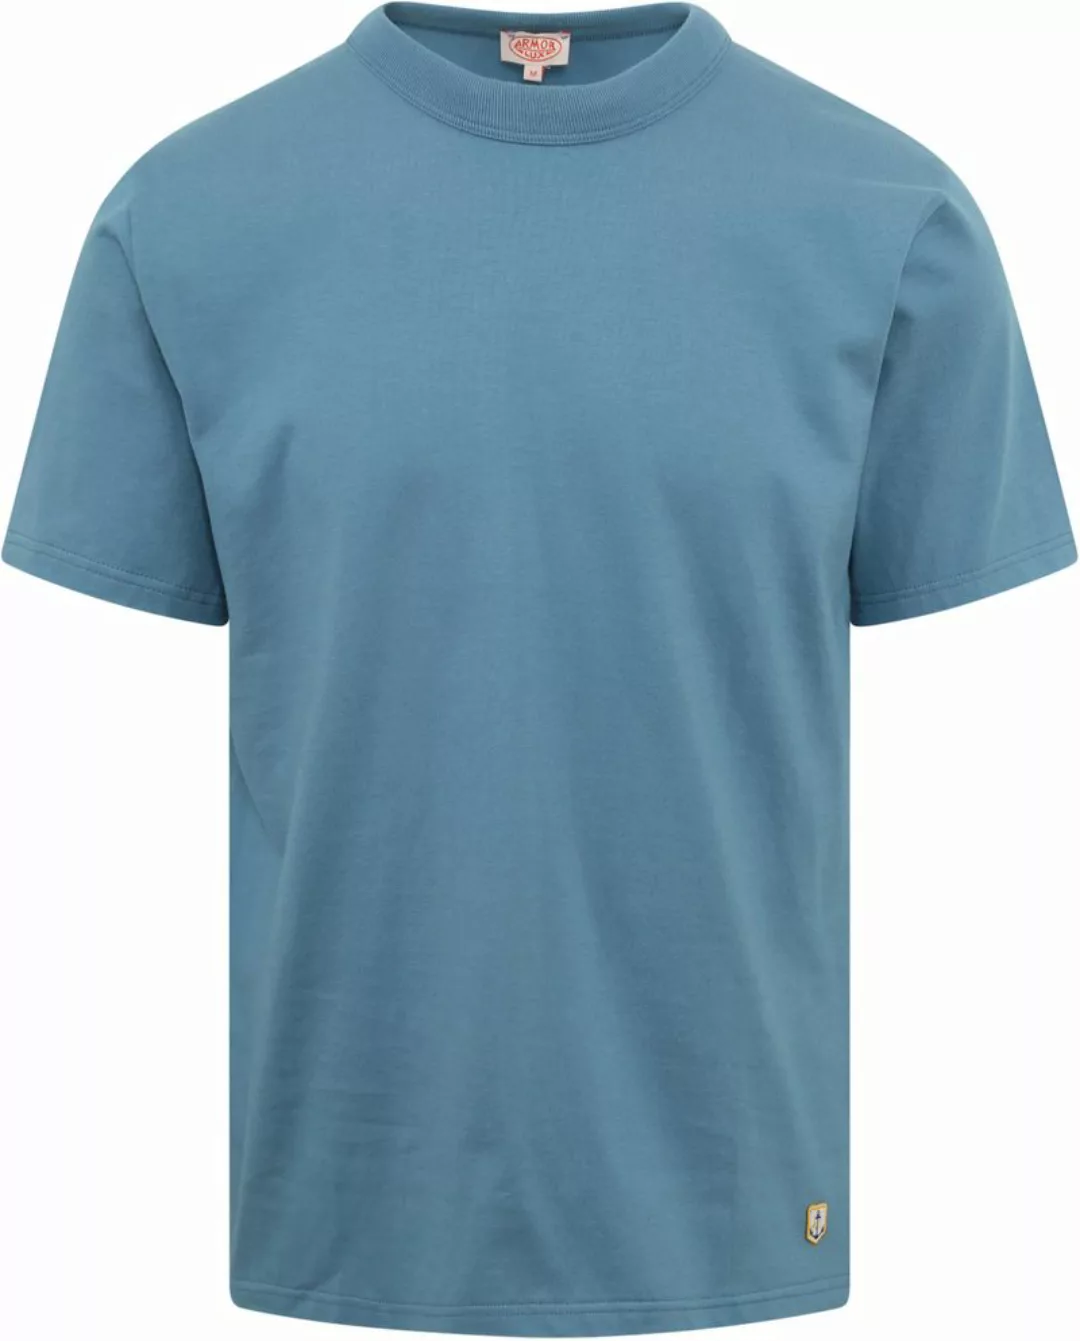 Armor-Lux T-Shirt Blau - Größe XXL günstig online kaufen